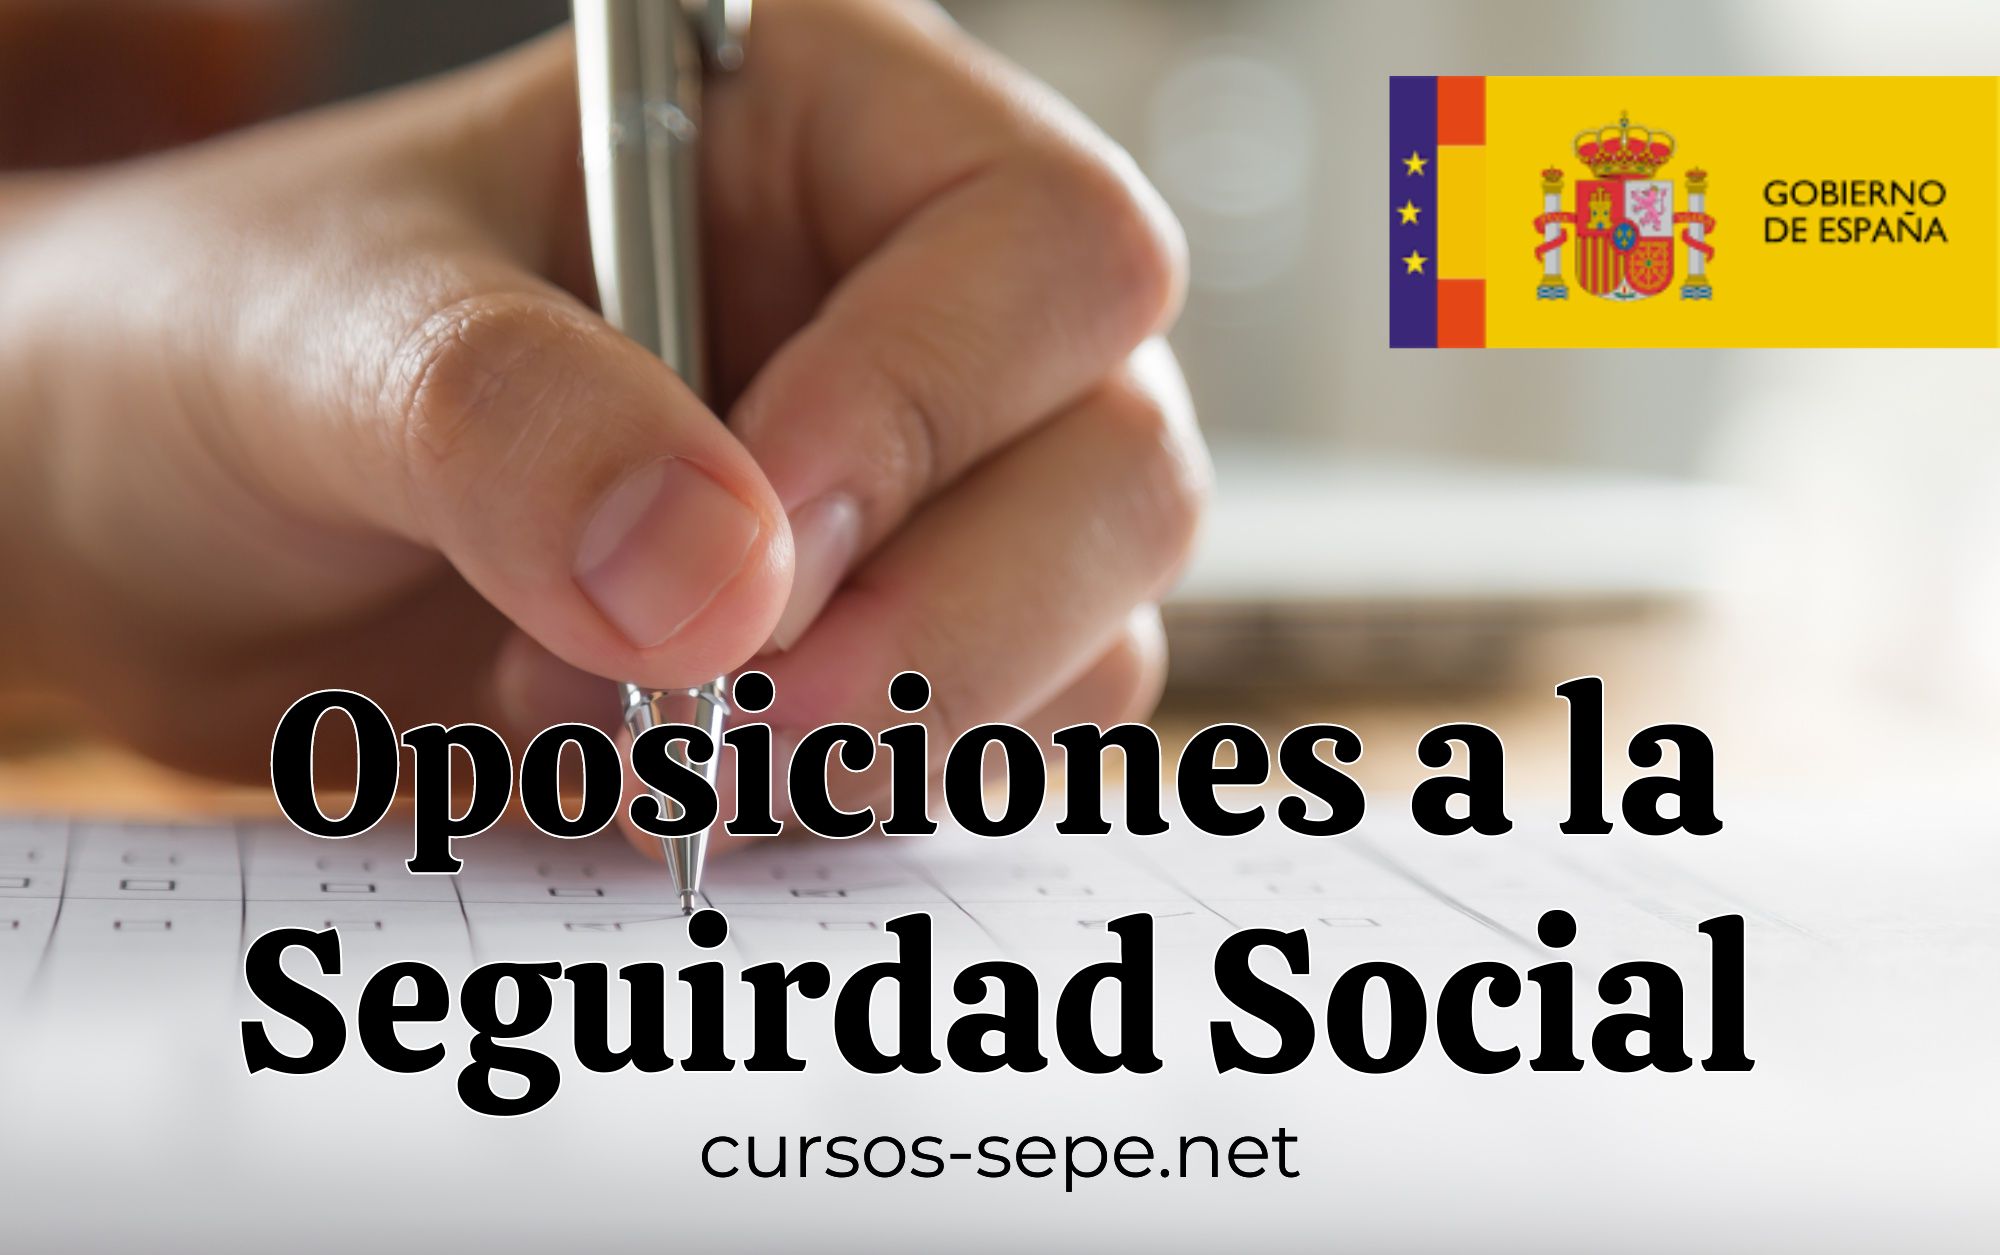 Información sobre la convocatoria de oposiciones de la Seguridad Social para cubrir 1700 plazas.